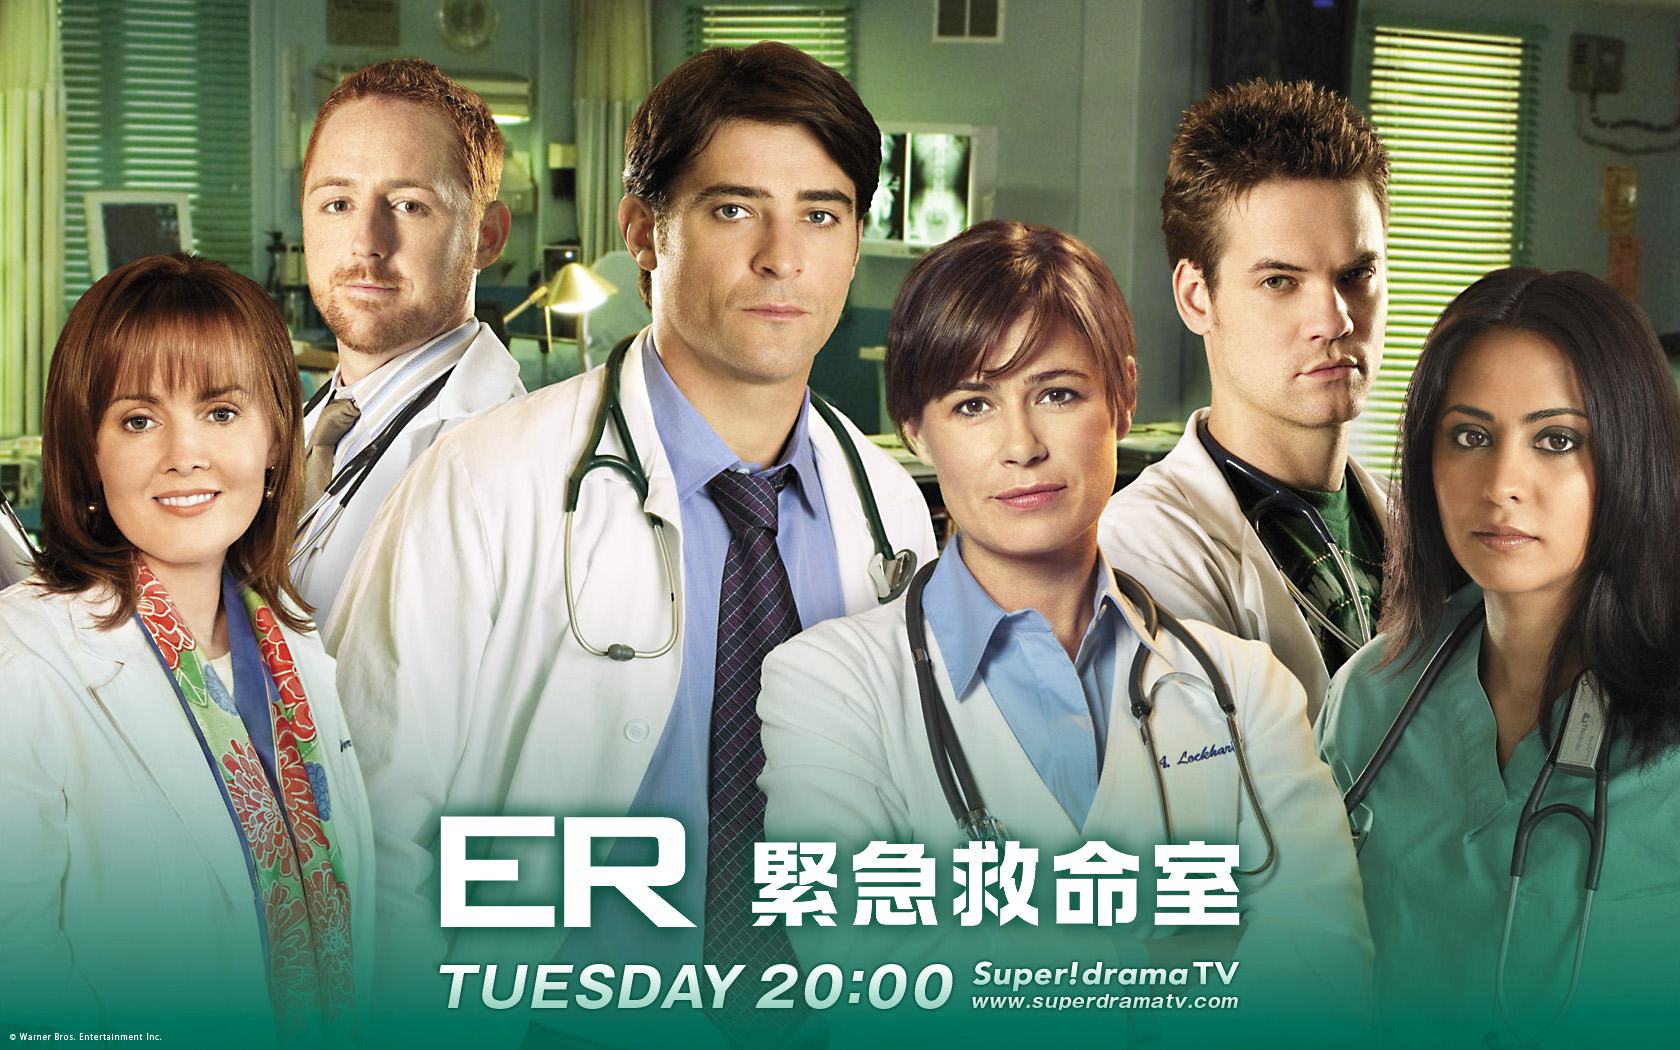 2003年 ER緊急救命室 : 年代別にわかる！！アーロン・ポール出演海外ドラマ - NAVER まとめ